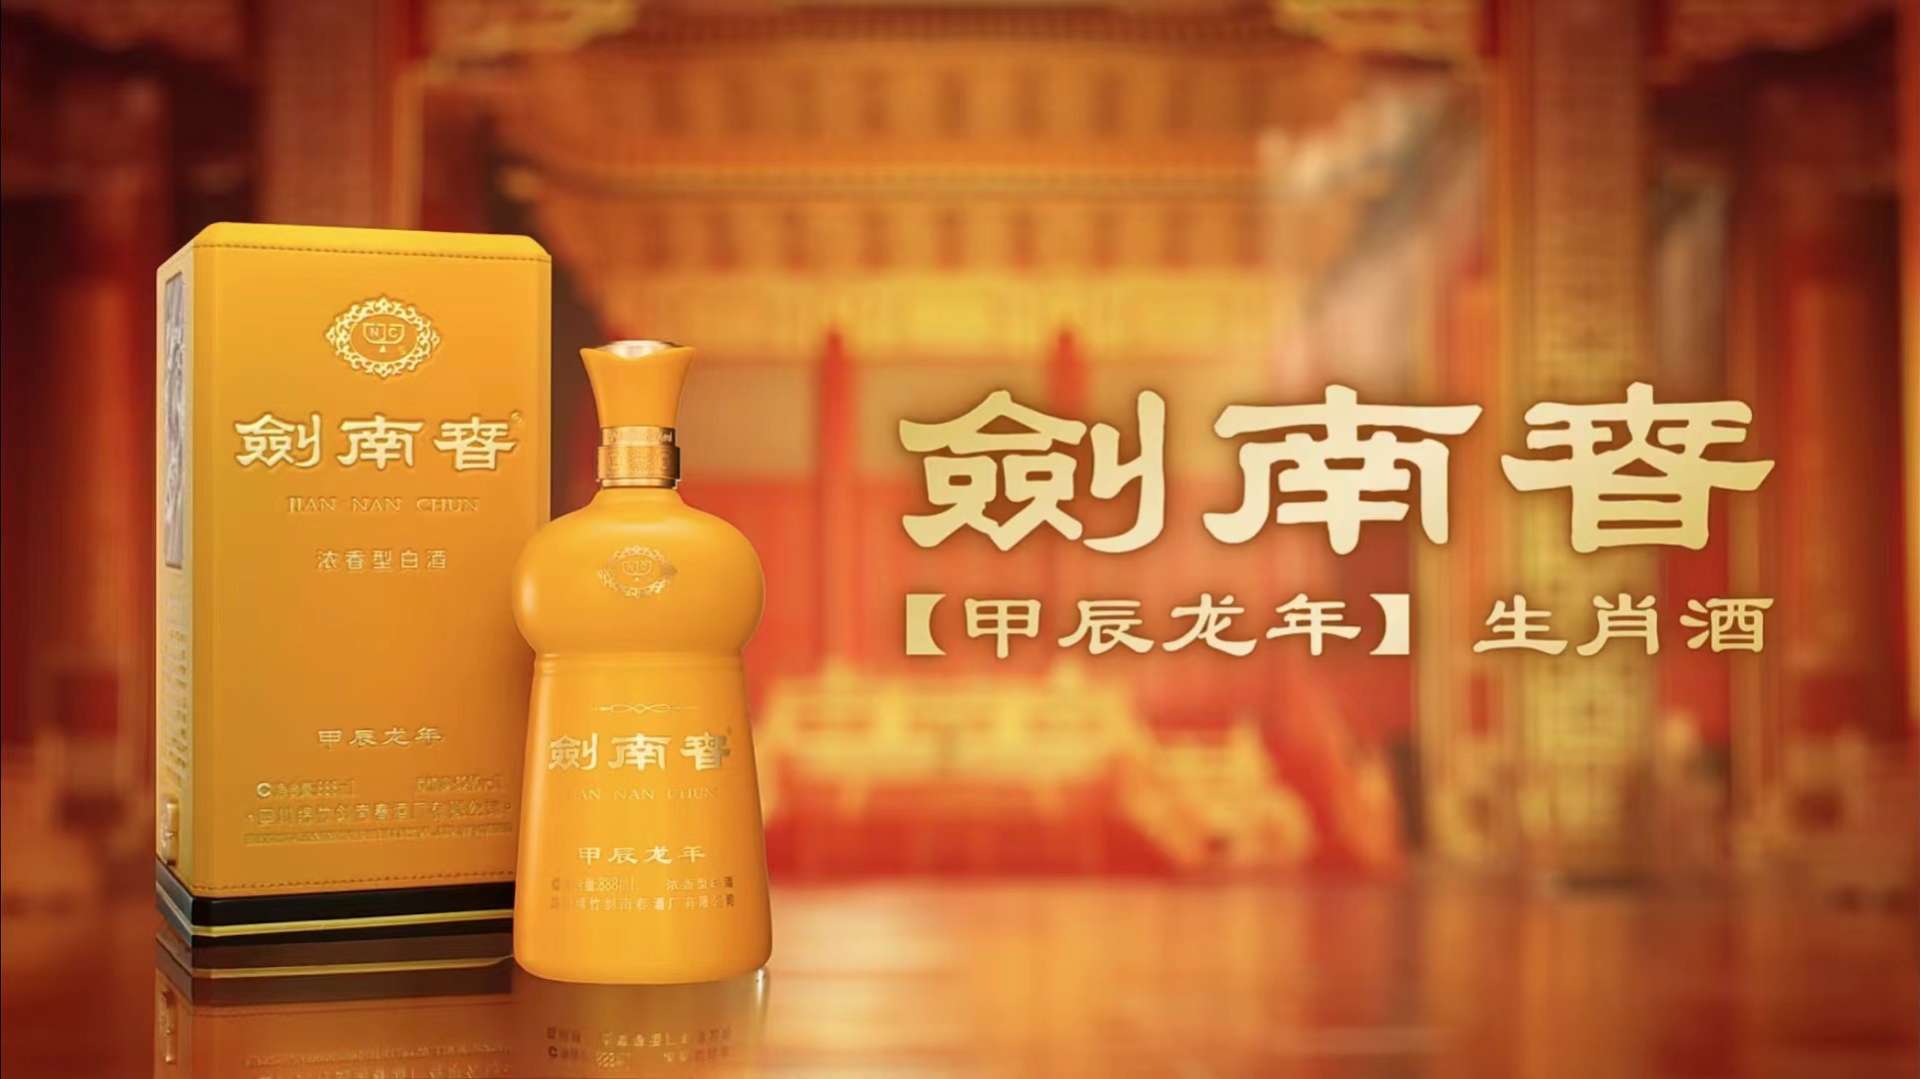 剑南春（甲辰龙年）首款生肖纪念酒广告TVC